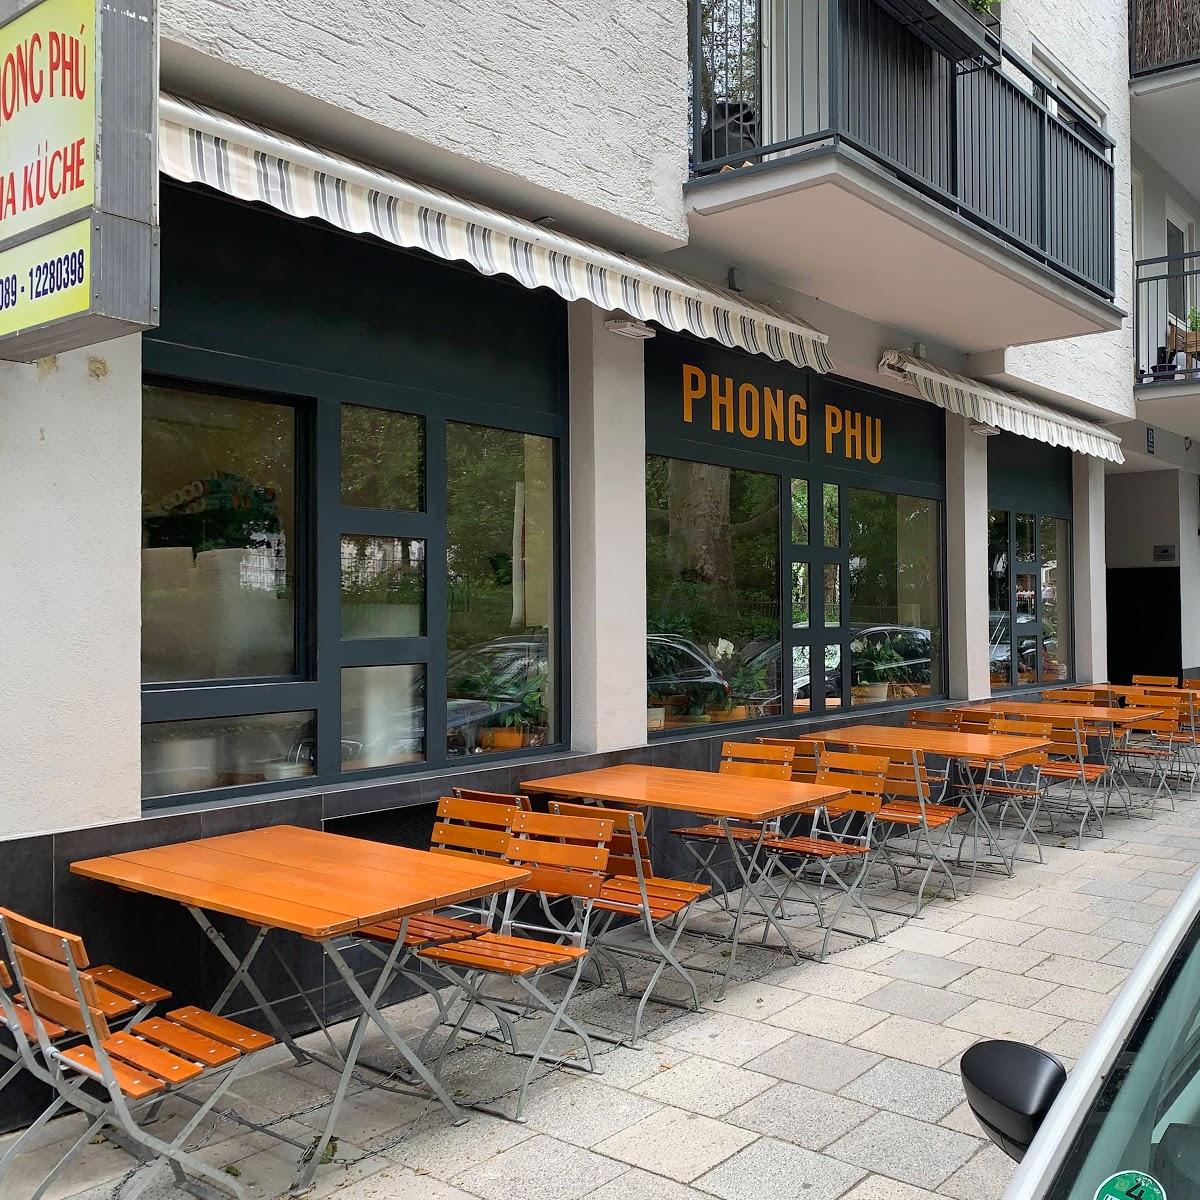 Restaurant "Phong Phú" in München